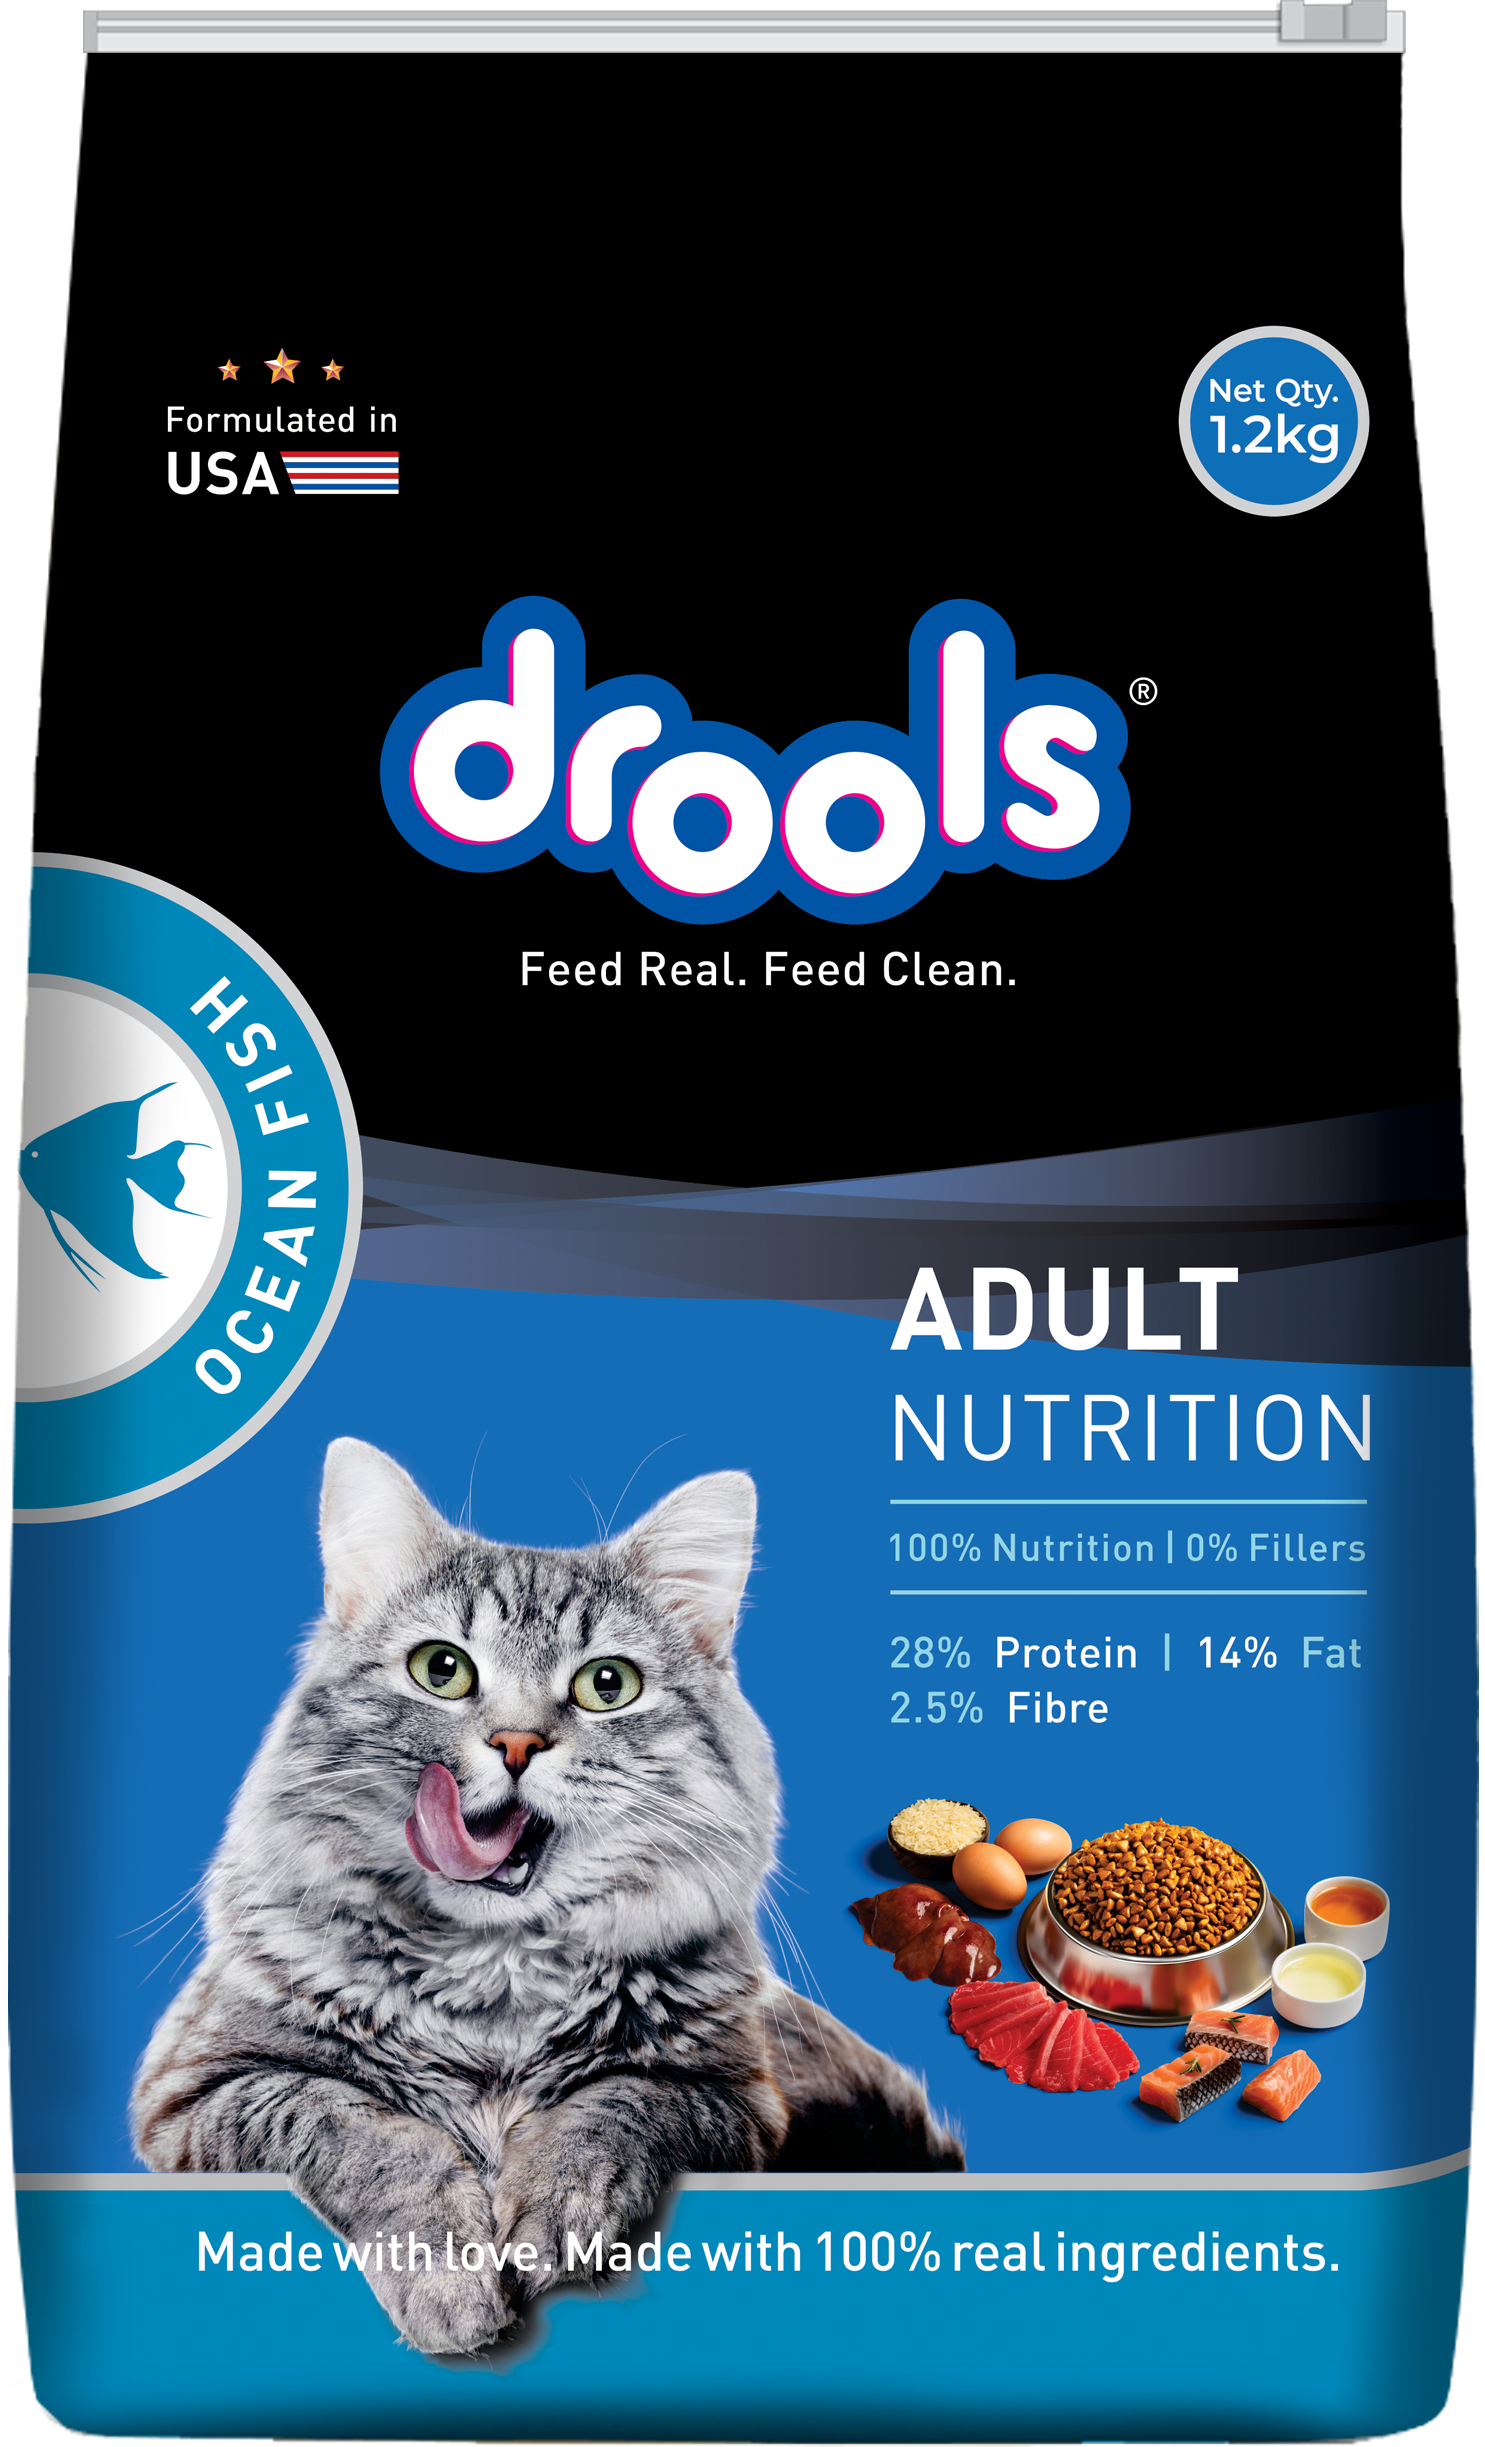  Drools Ocean Fish Adult Cat Food